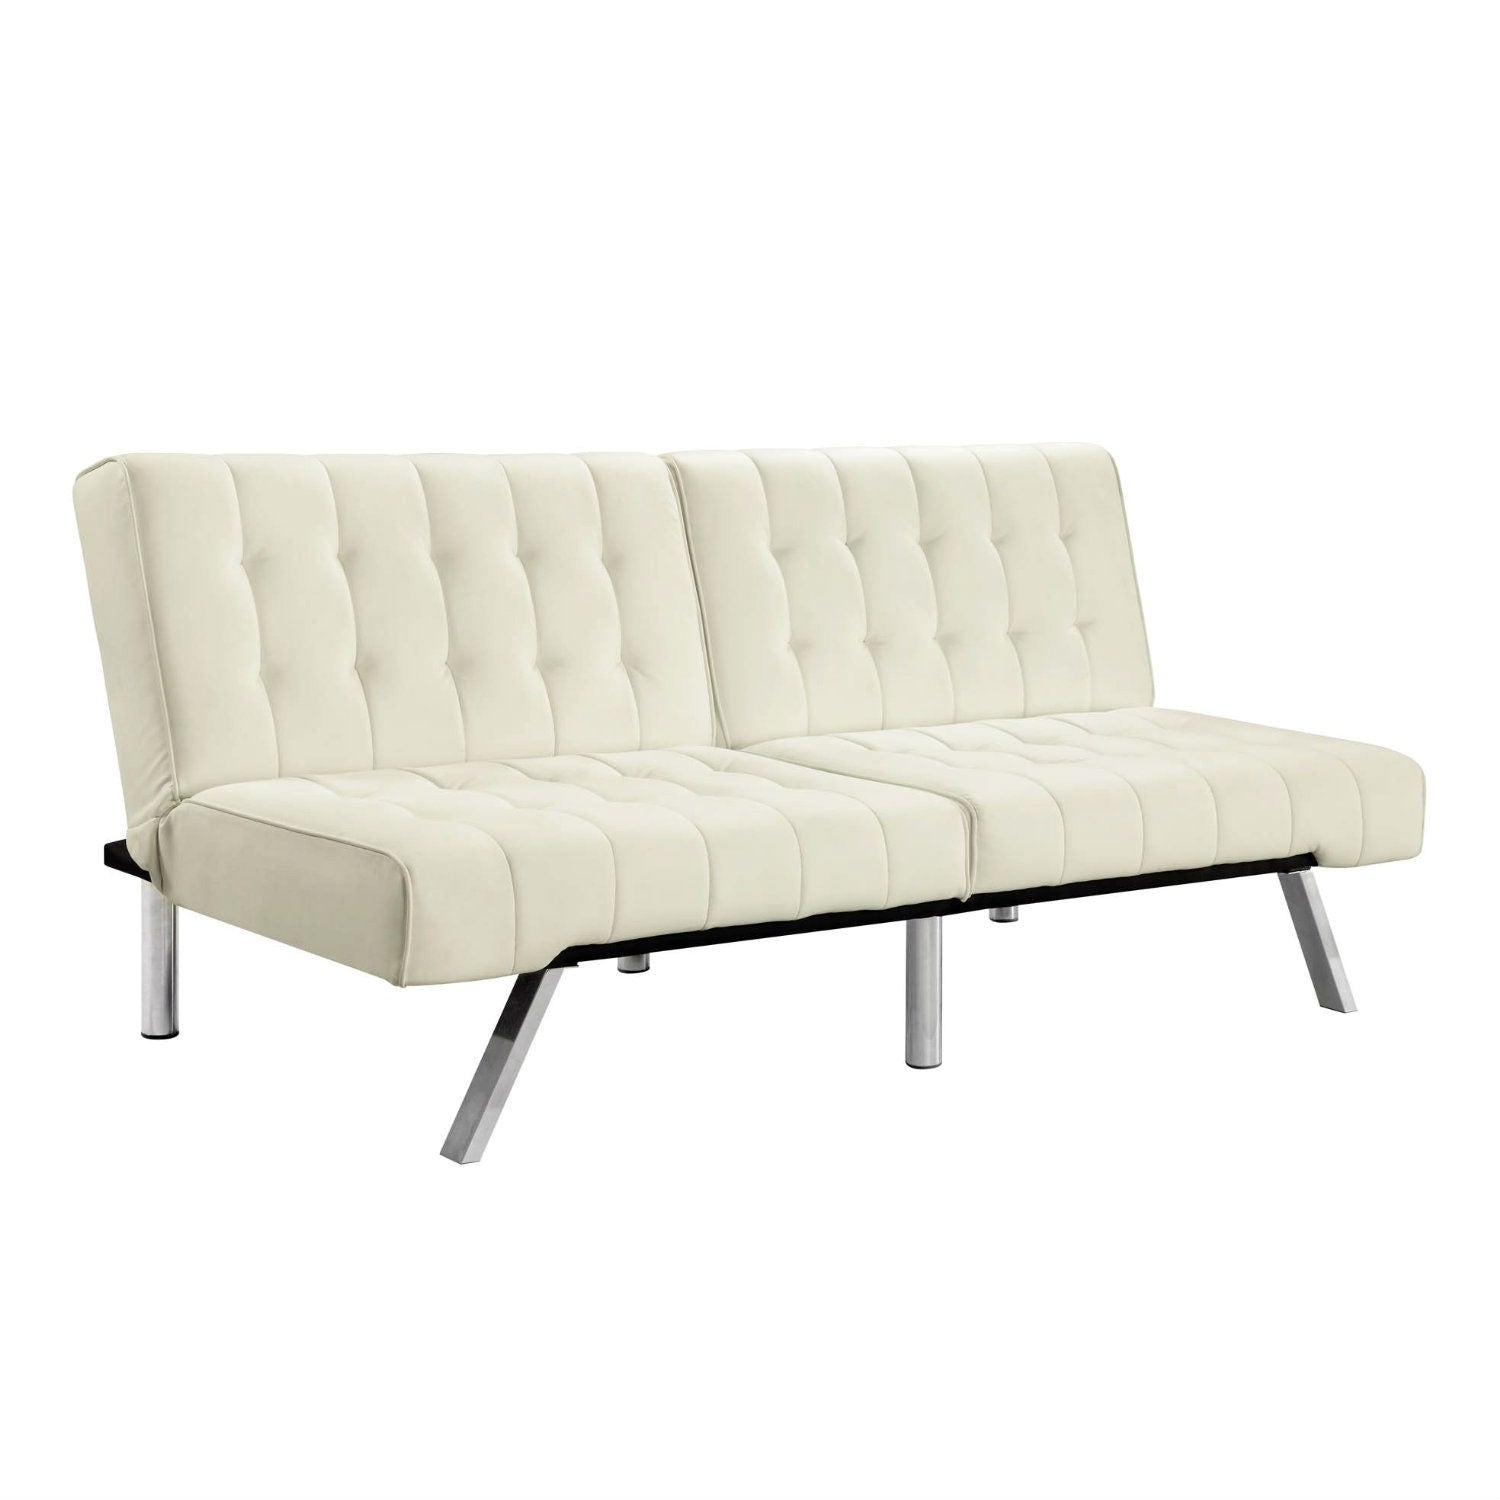 Split-back Modern Sleeper Sofa in Vanilla Faux Leather